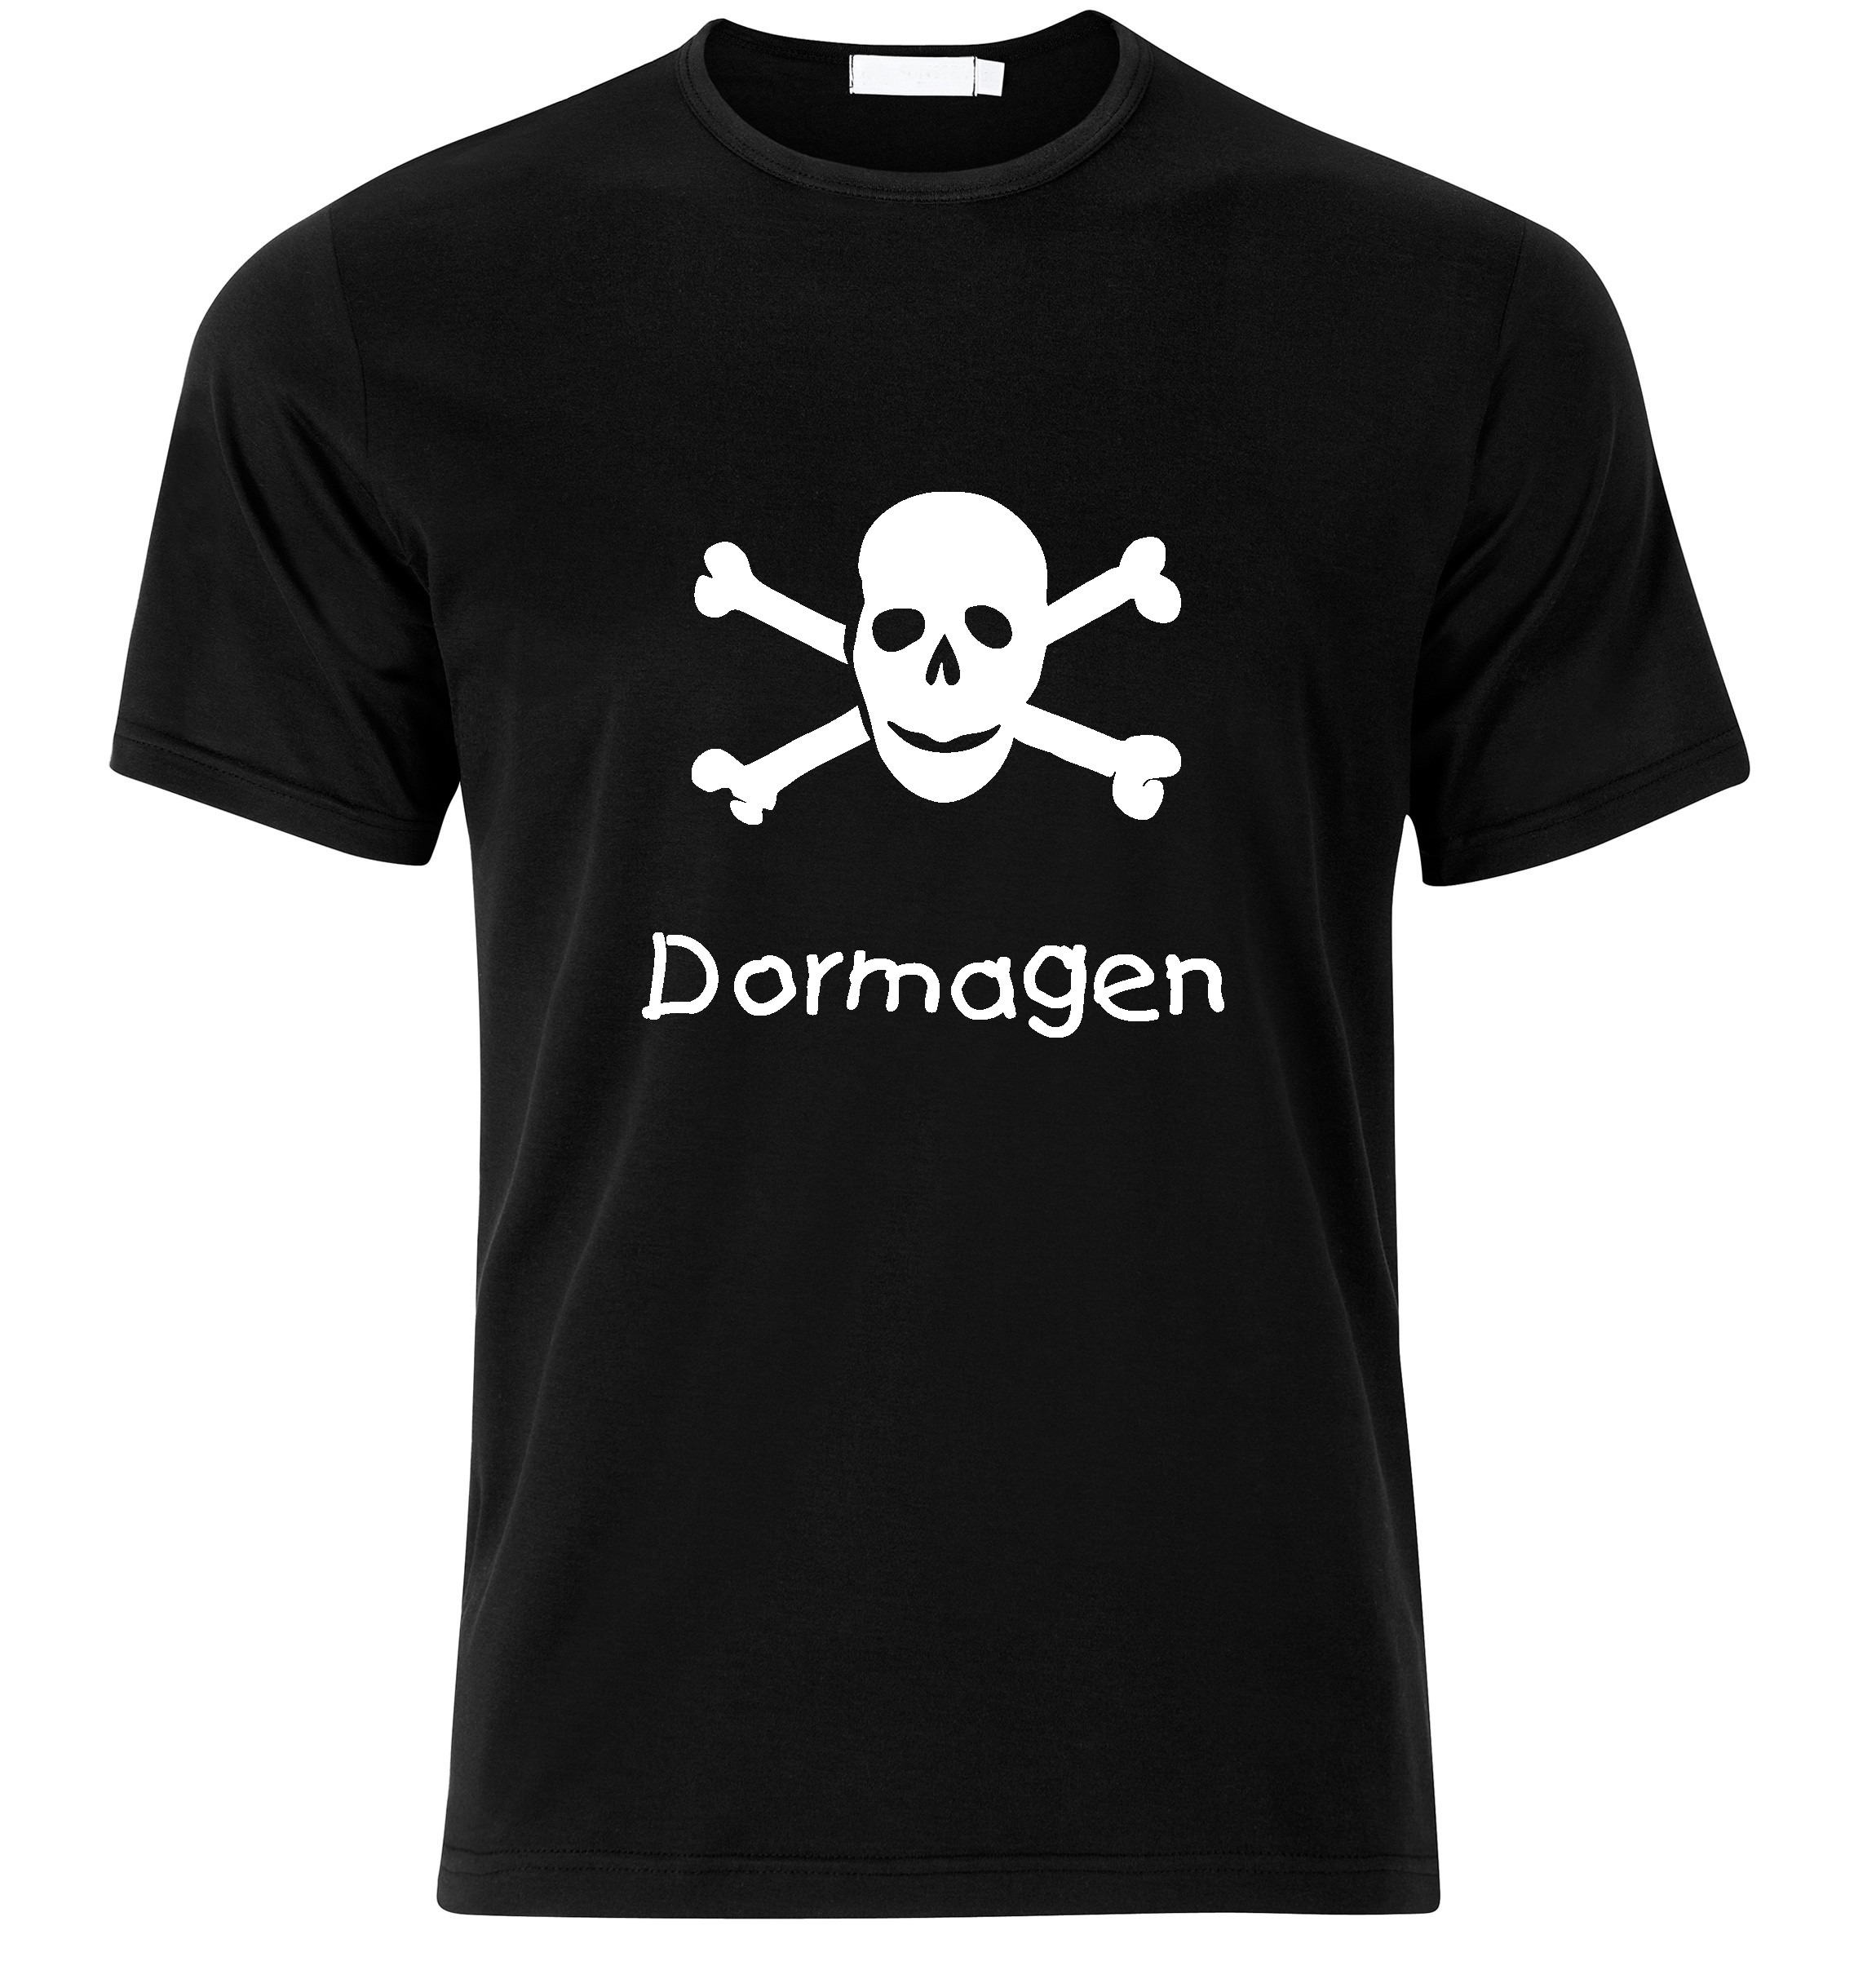 T-Shirt Dormagen Jolly Roger, Totenkopf